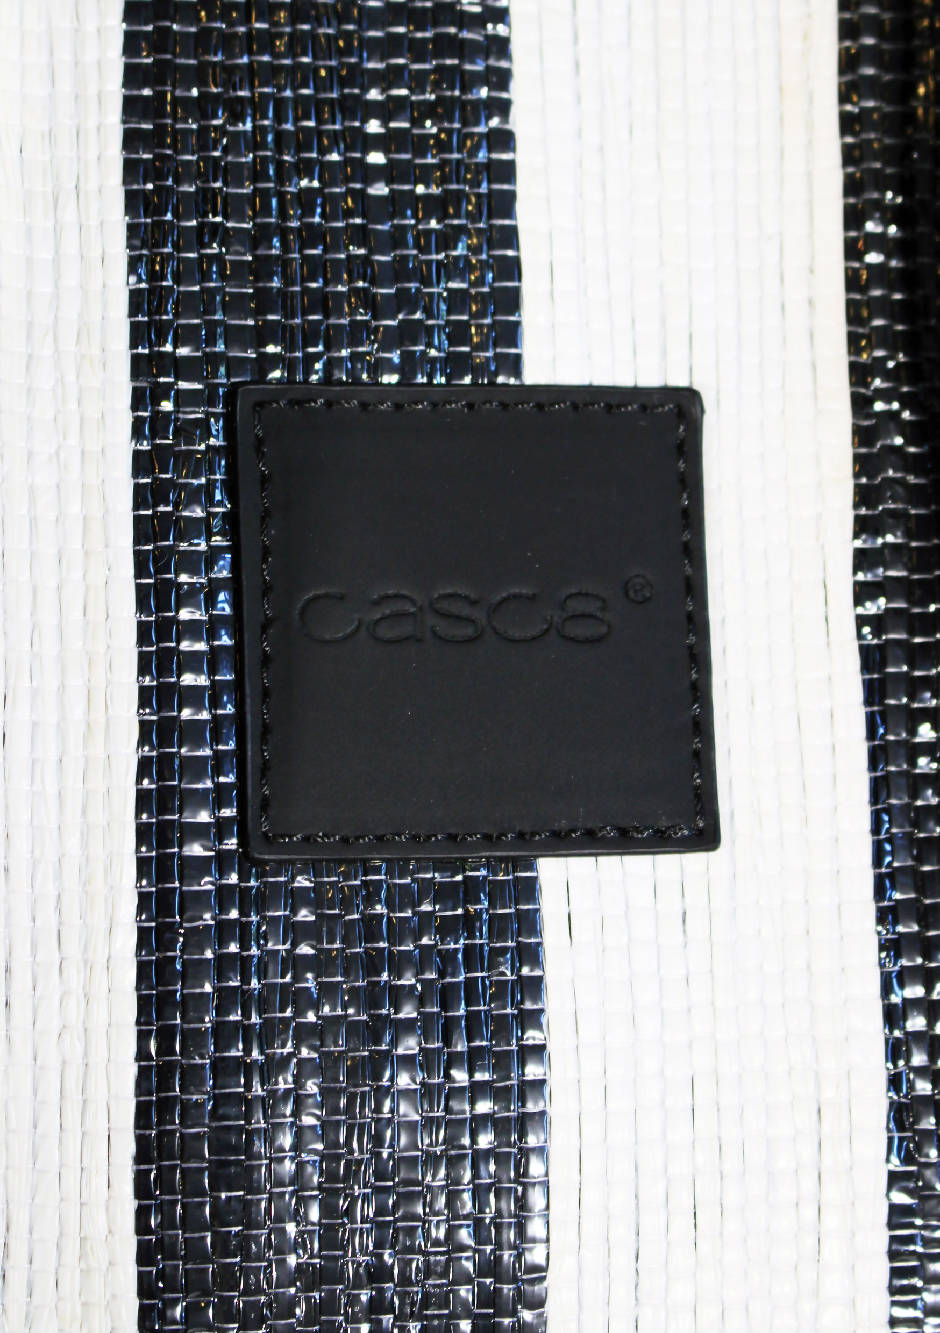 Casc8 Asgar Striped Black White Bag